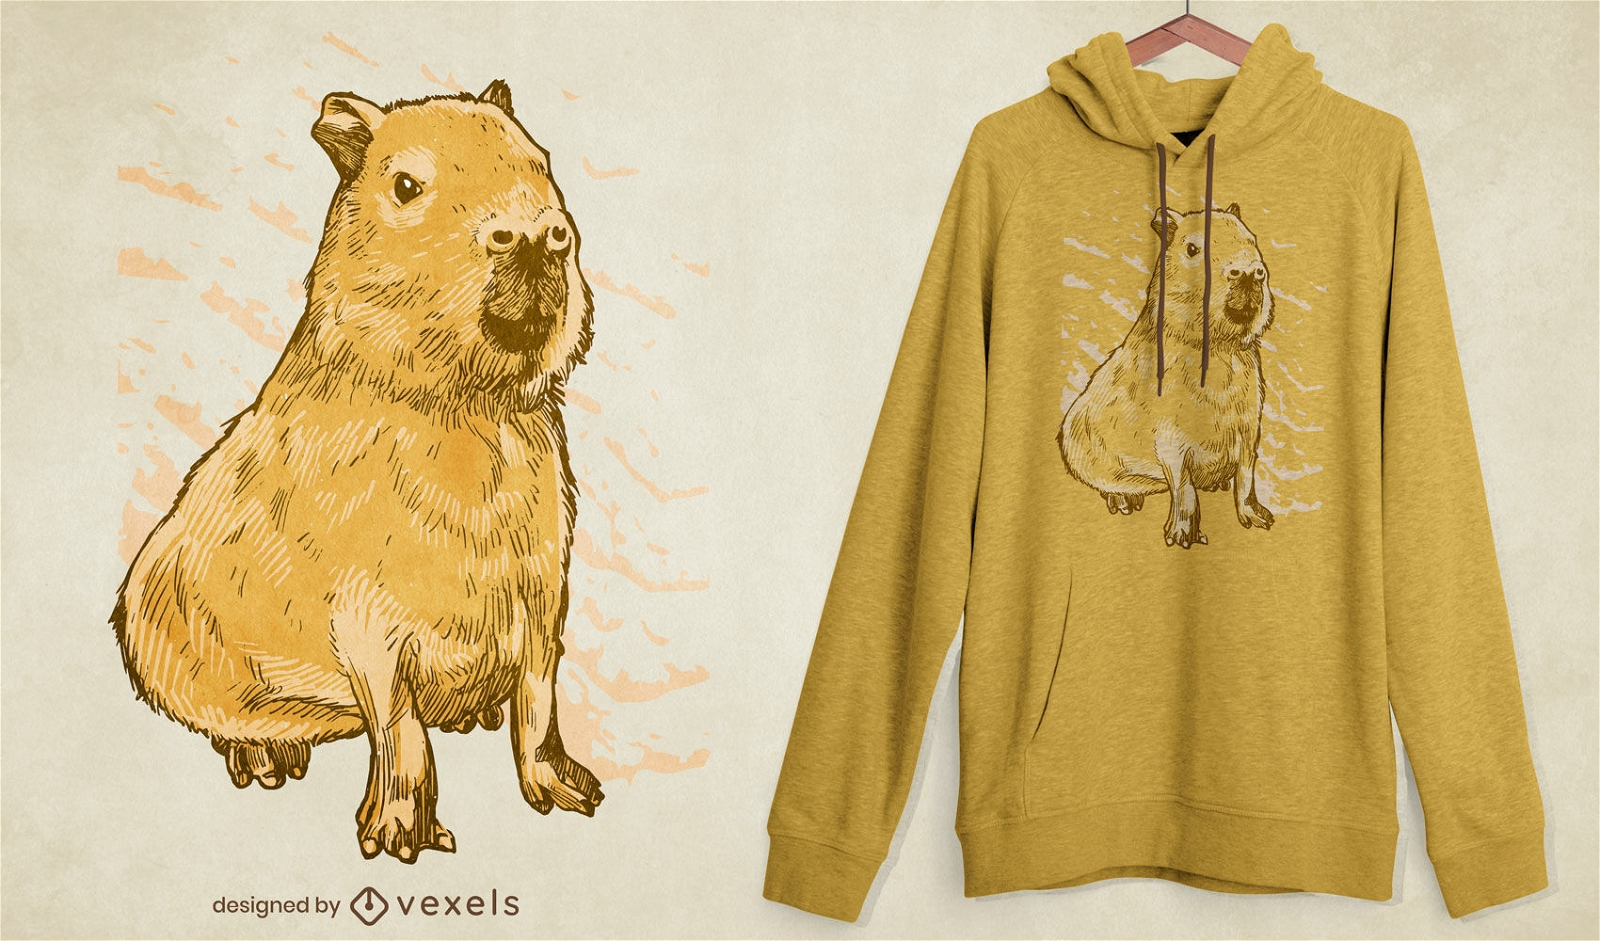 Realistisches Capybara-Tier-T-Shirt-Design